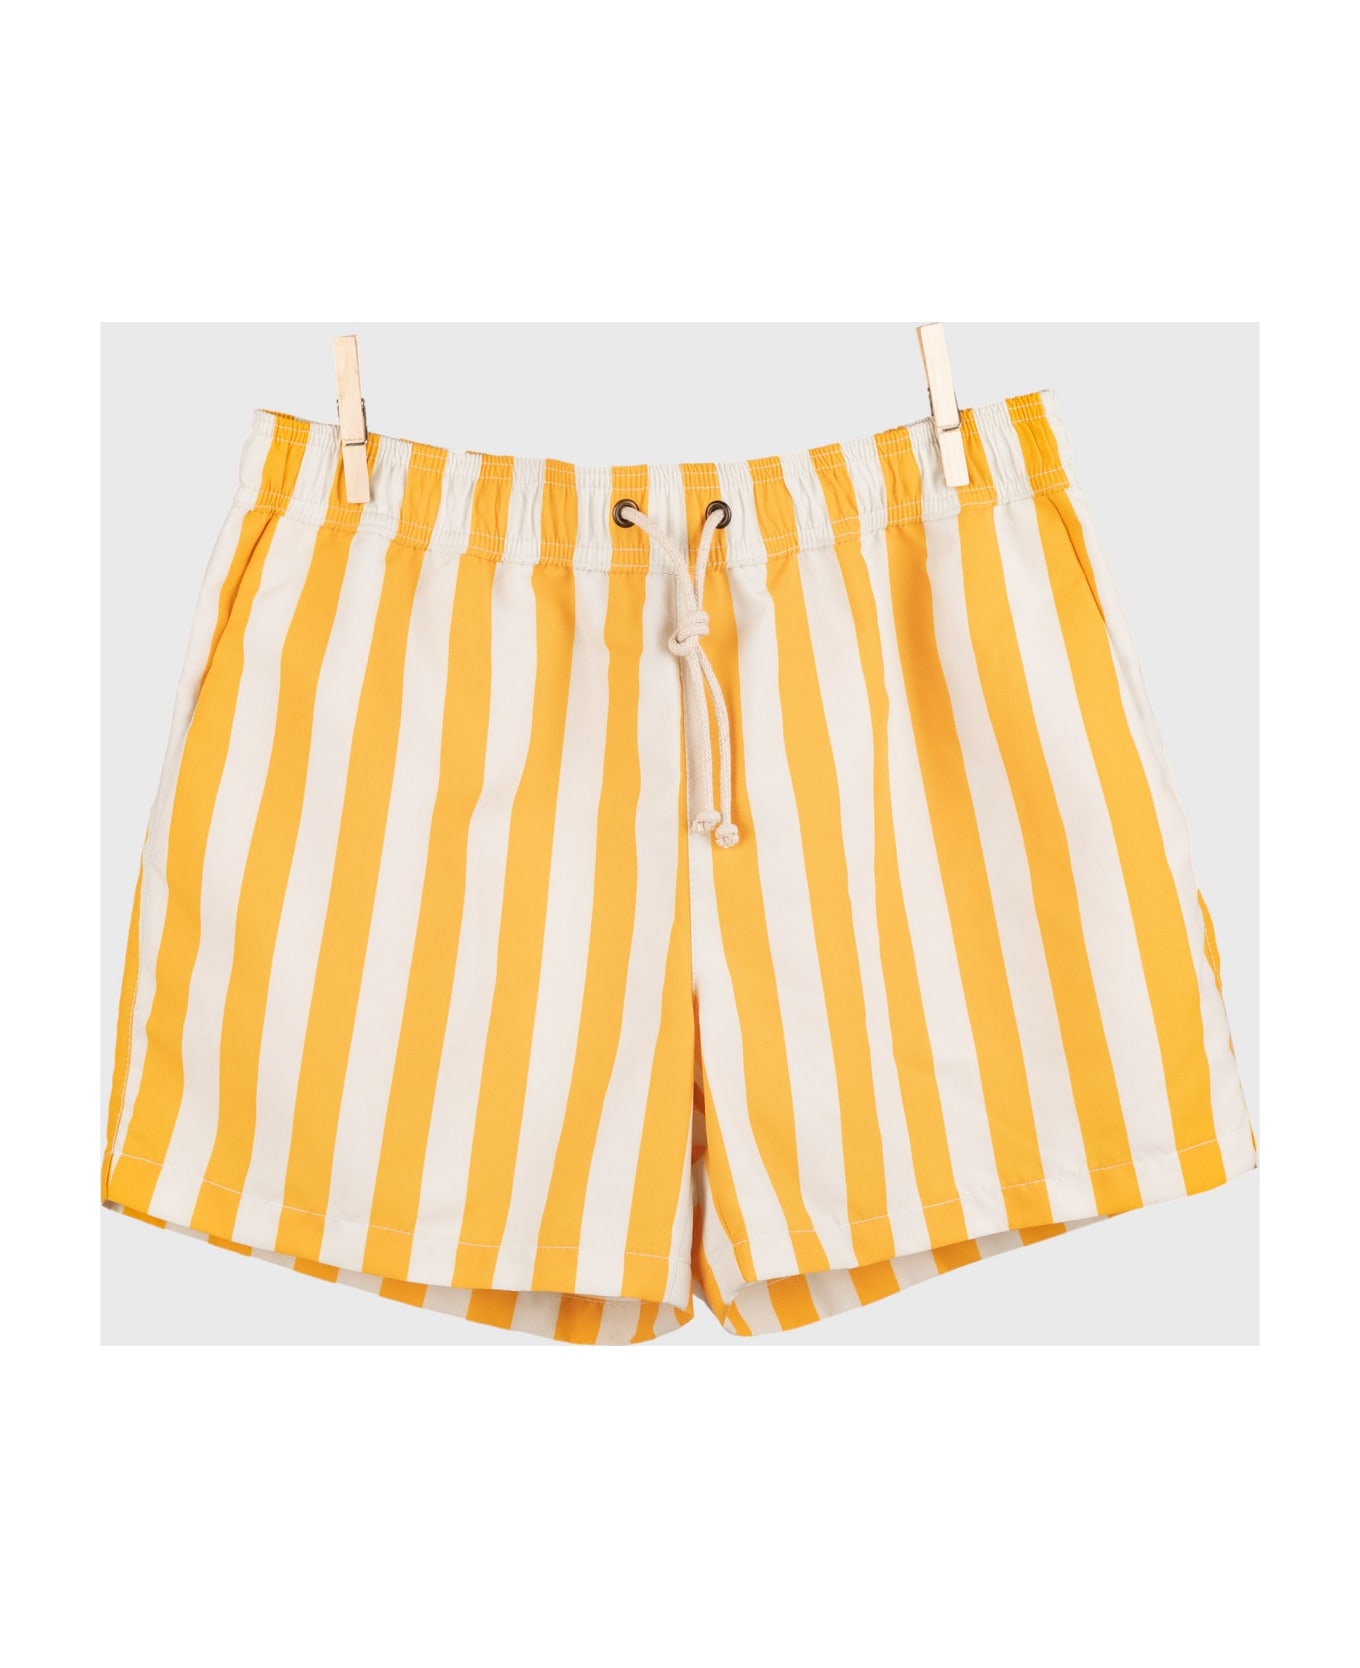 Ripa Ripa Paraggi Giallo Swim Shorts - Yellow